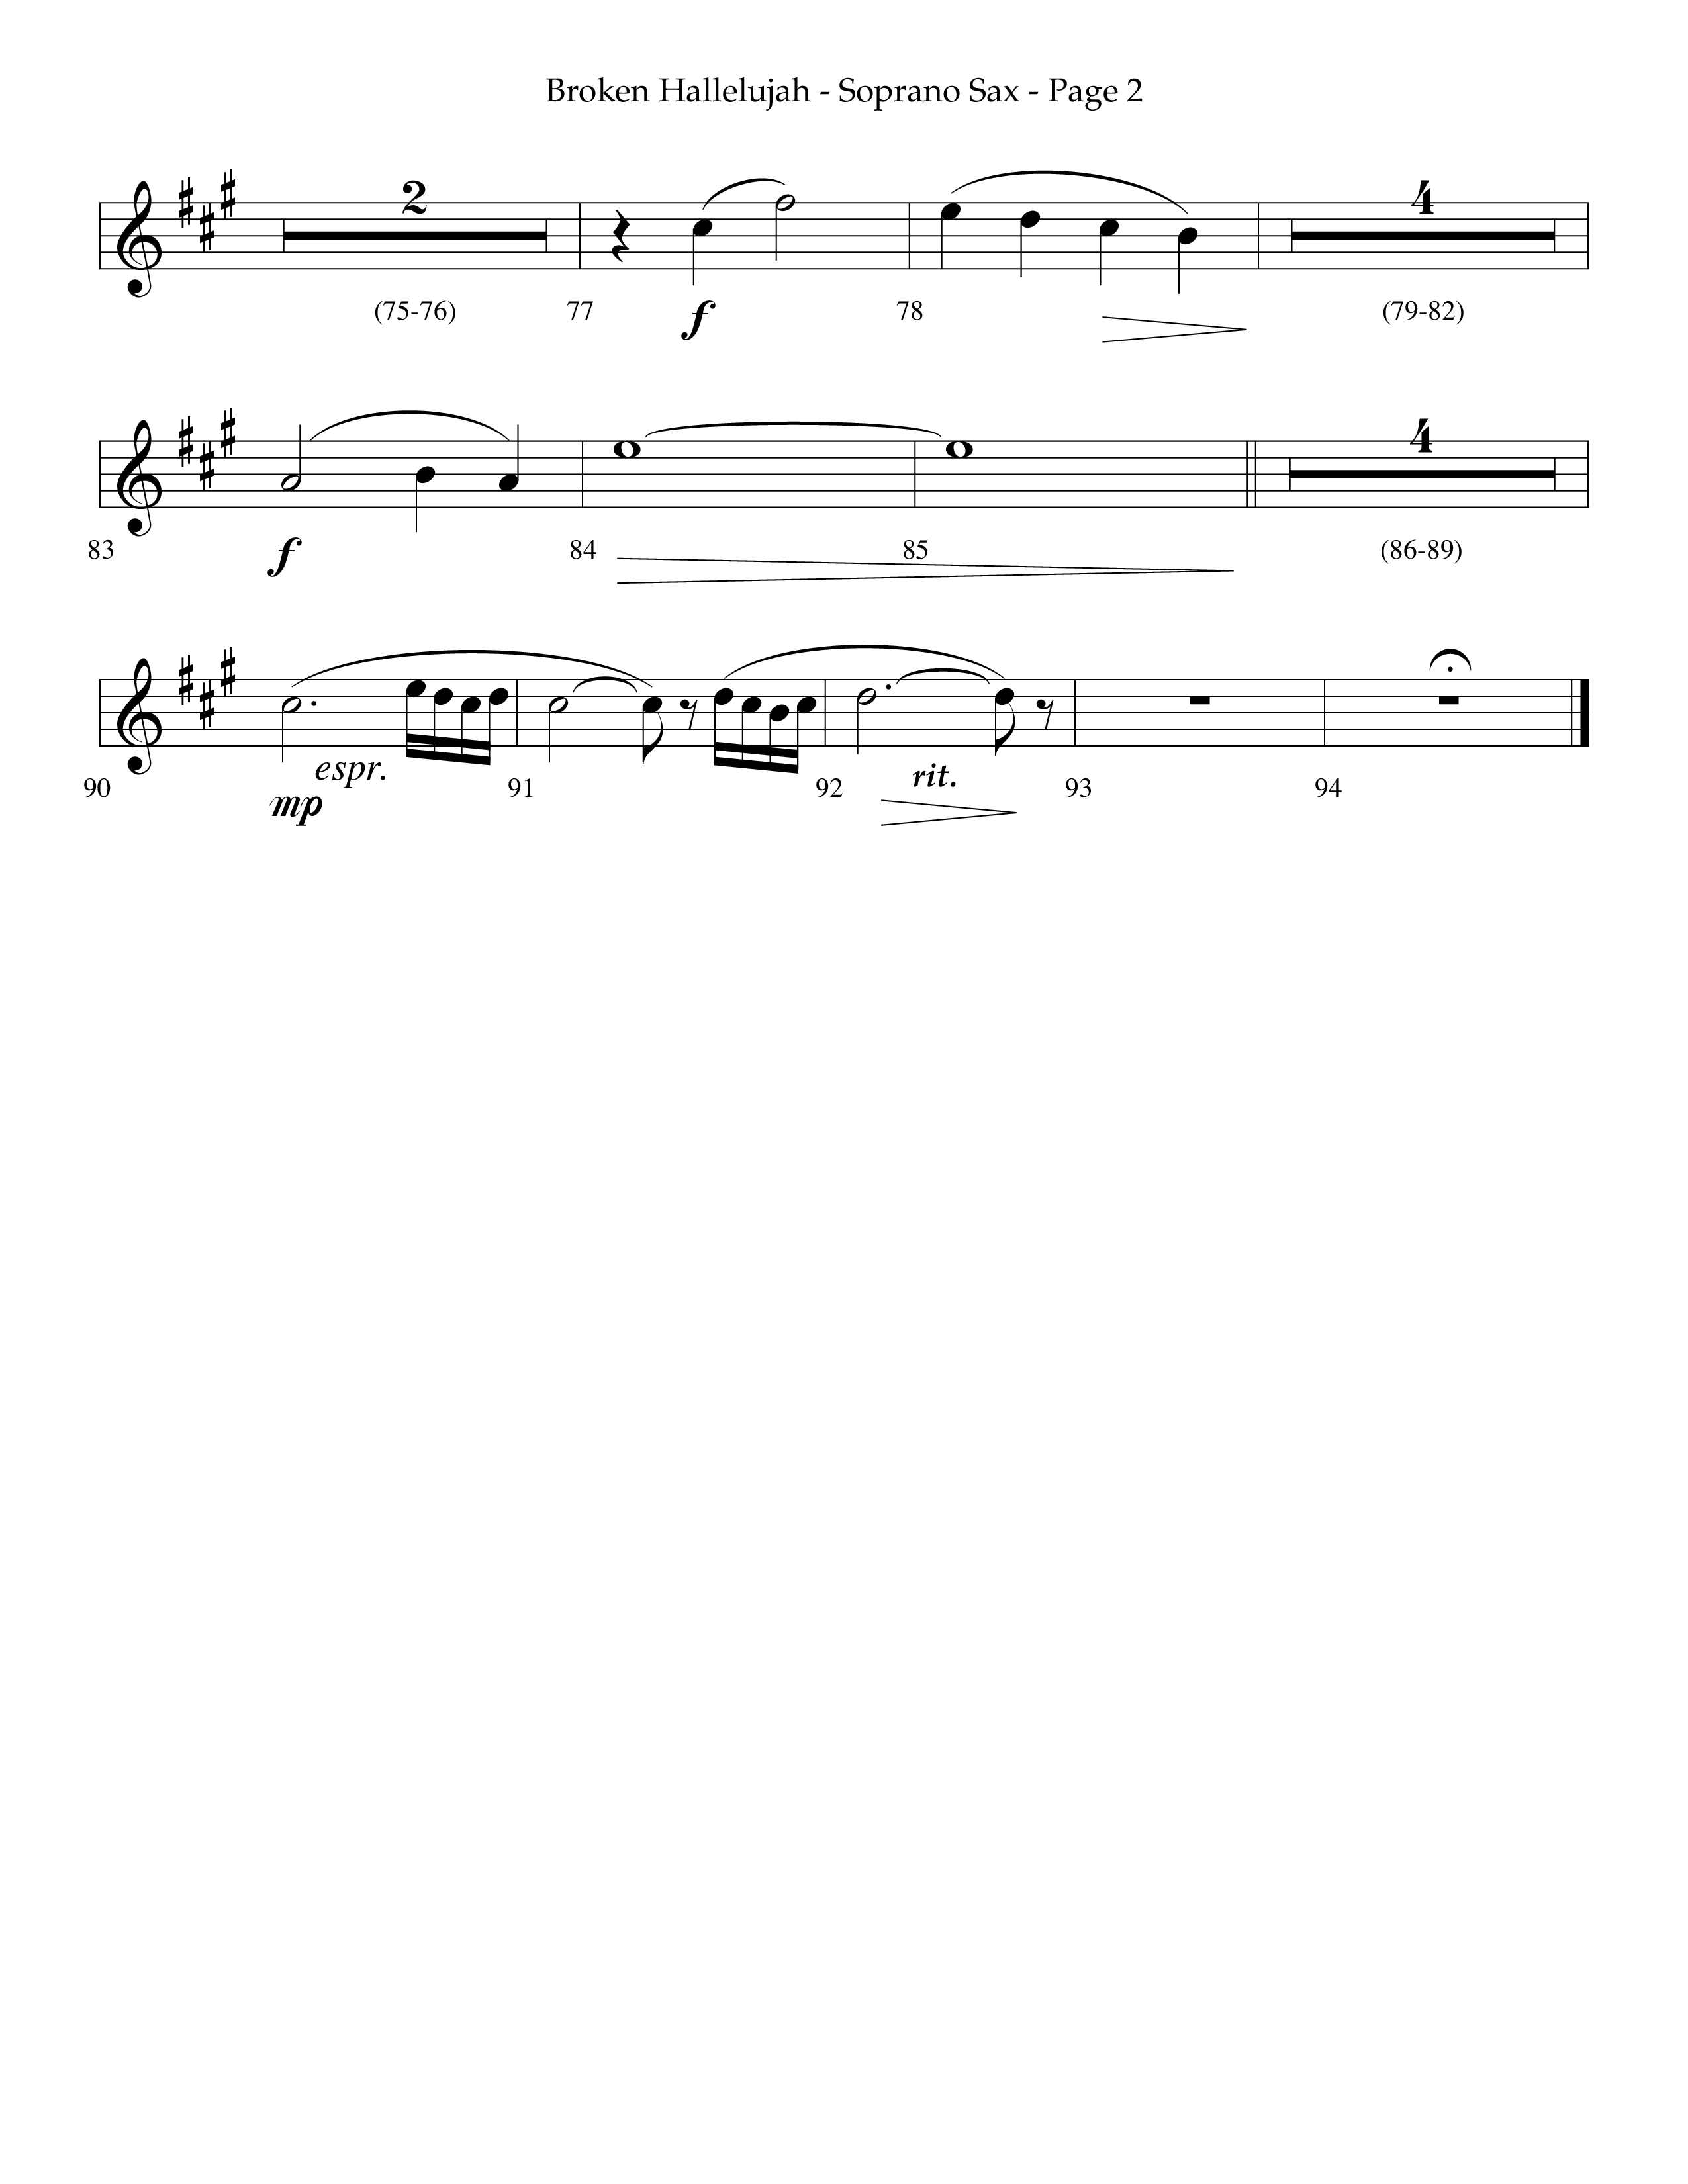 Broken Hallelujah (Choral Anthem SATB) Soprano Sax (Lifeway Choral / Arr. Phillip Keveren)